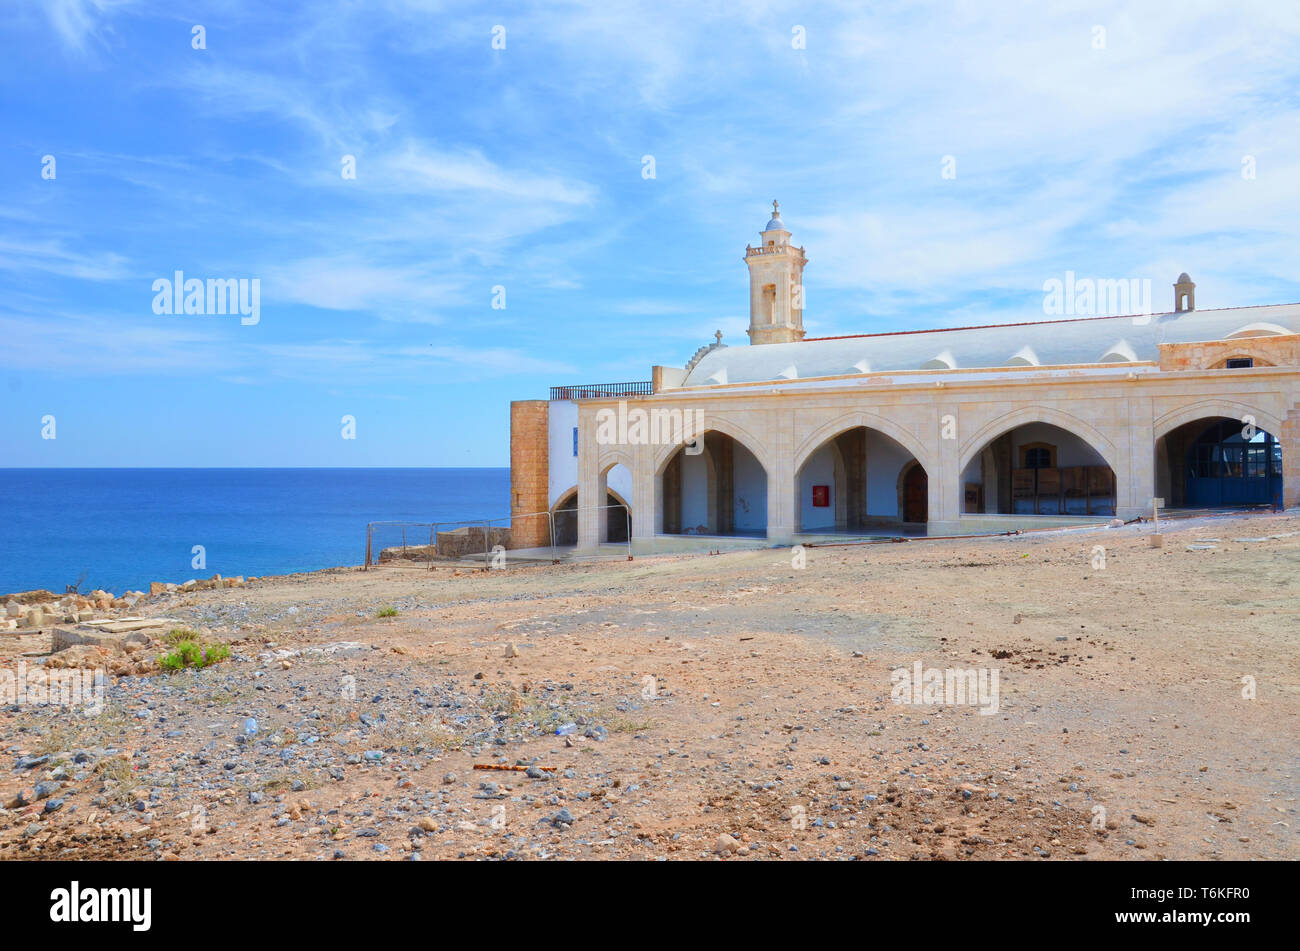 Beau bâtiment historique du monastère Apostolos Andreas orthodoxe dans la péninsule de Karpas, Bain Turc Chypre du Nord prises sur une journée ensoleillée avec ciel bleu au-dessus de la mer et à l'arrière-plan. Banque D'Images